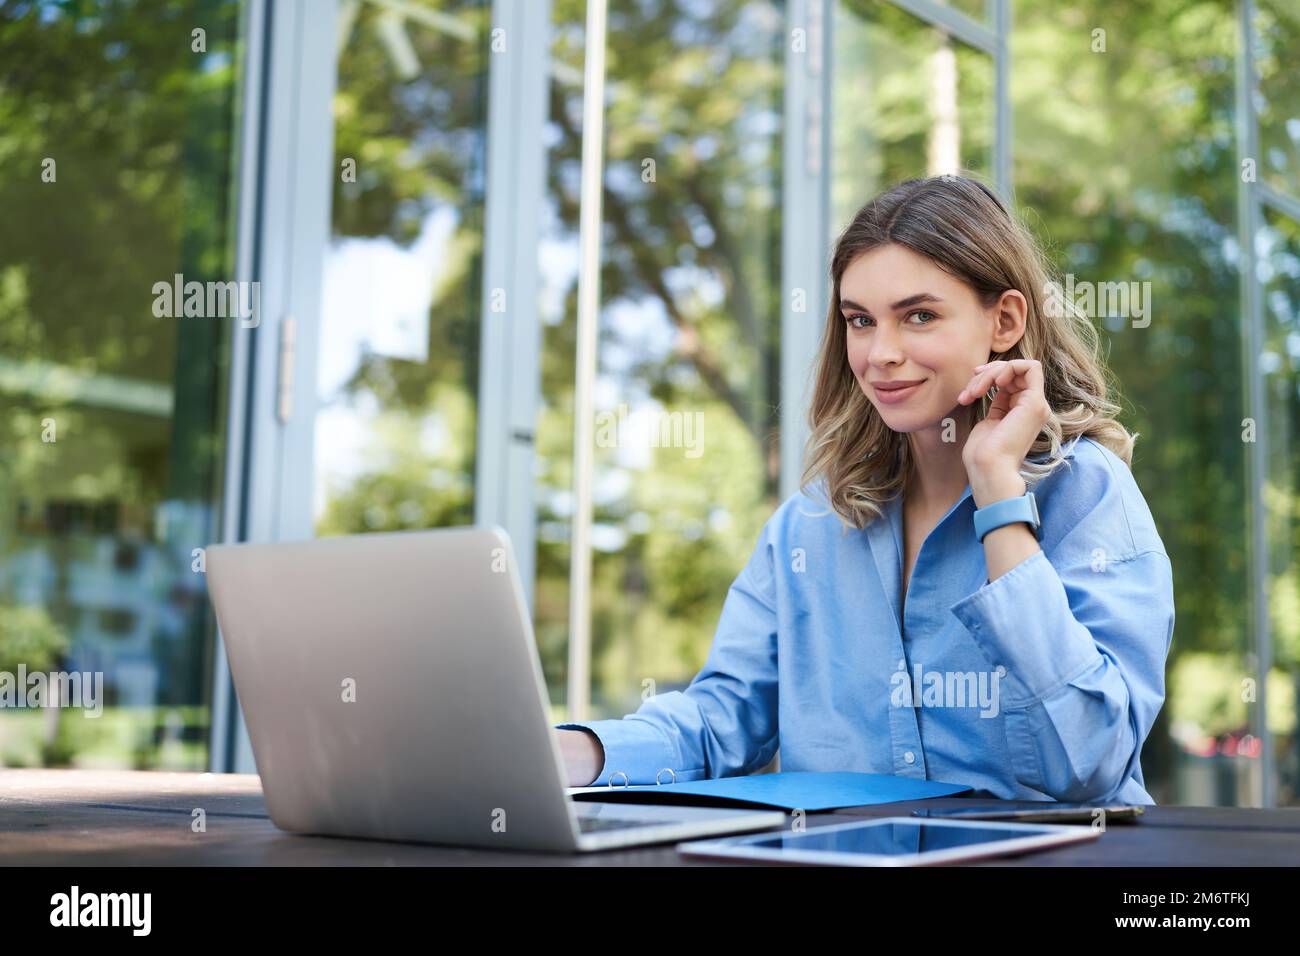 Porträt einer Geschäftsfrau, die an der frischen Luft arbeitet. Weibliche Geschäftsfrau mit Laptop, die außerhalb des Bürogebäudes sitzt und Computer verwendet Stockfoto